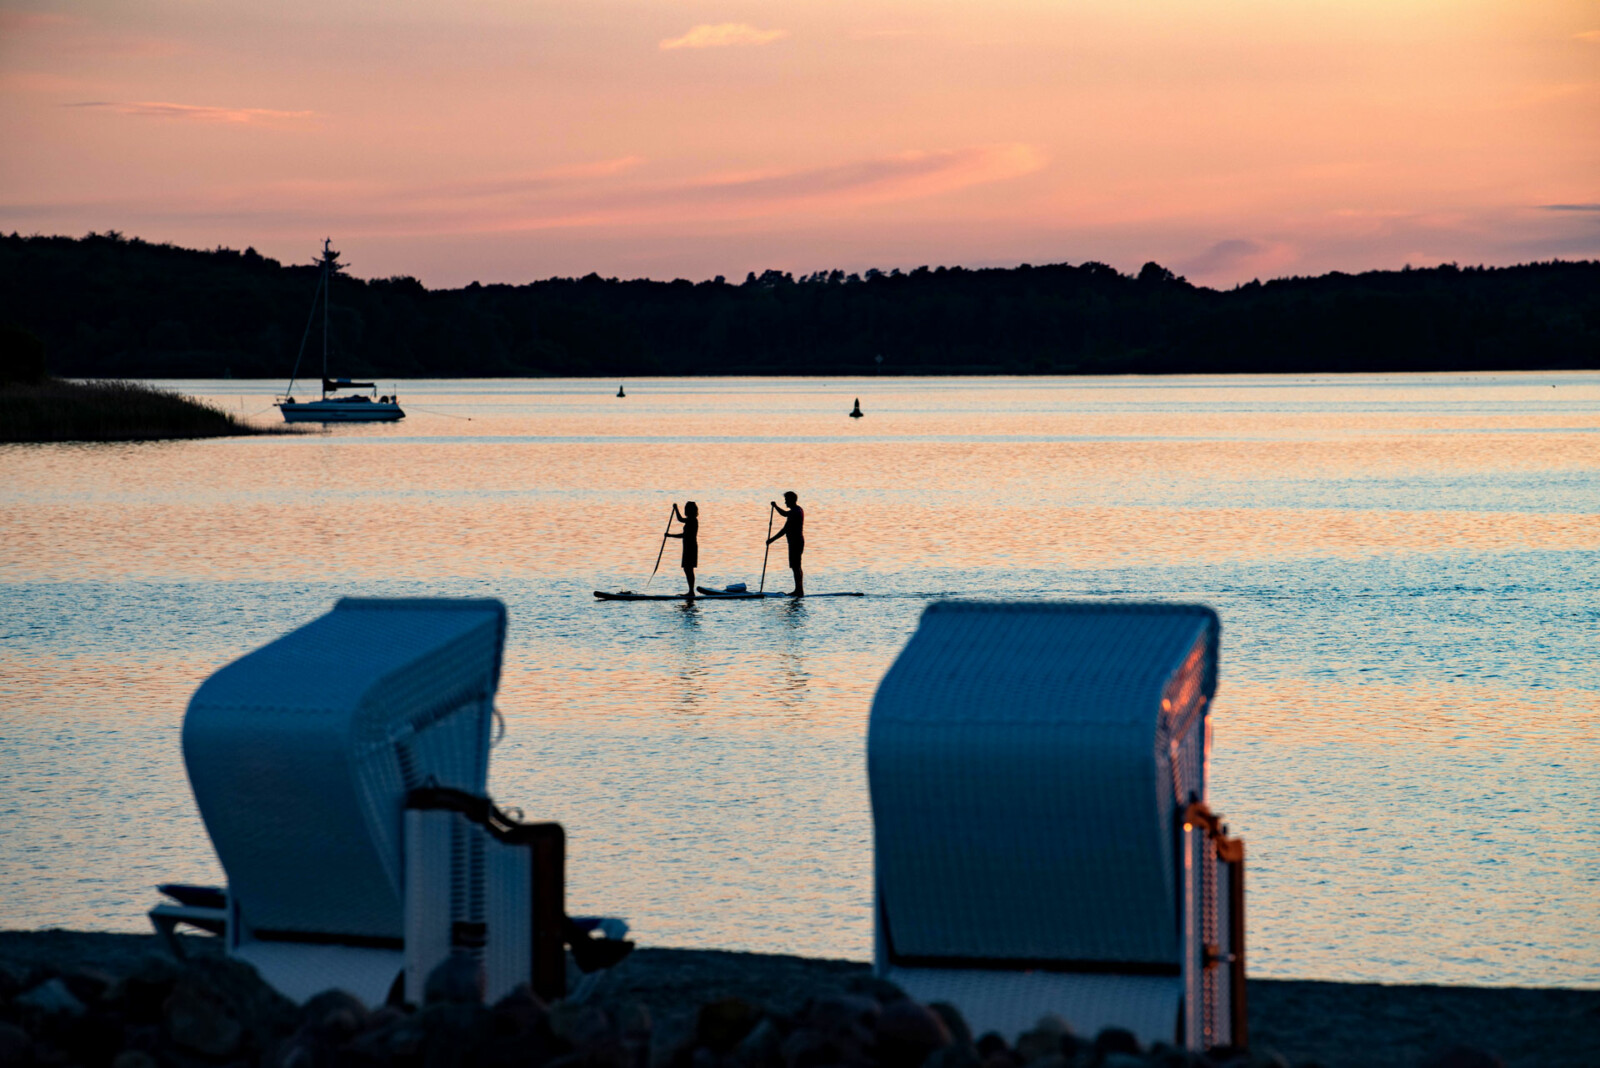 Sonnenuntergang über dem See mit SUP Paddlern.